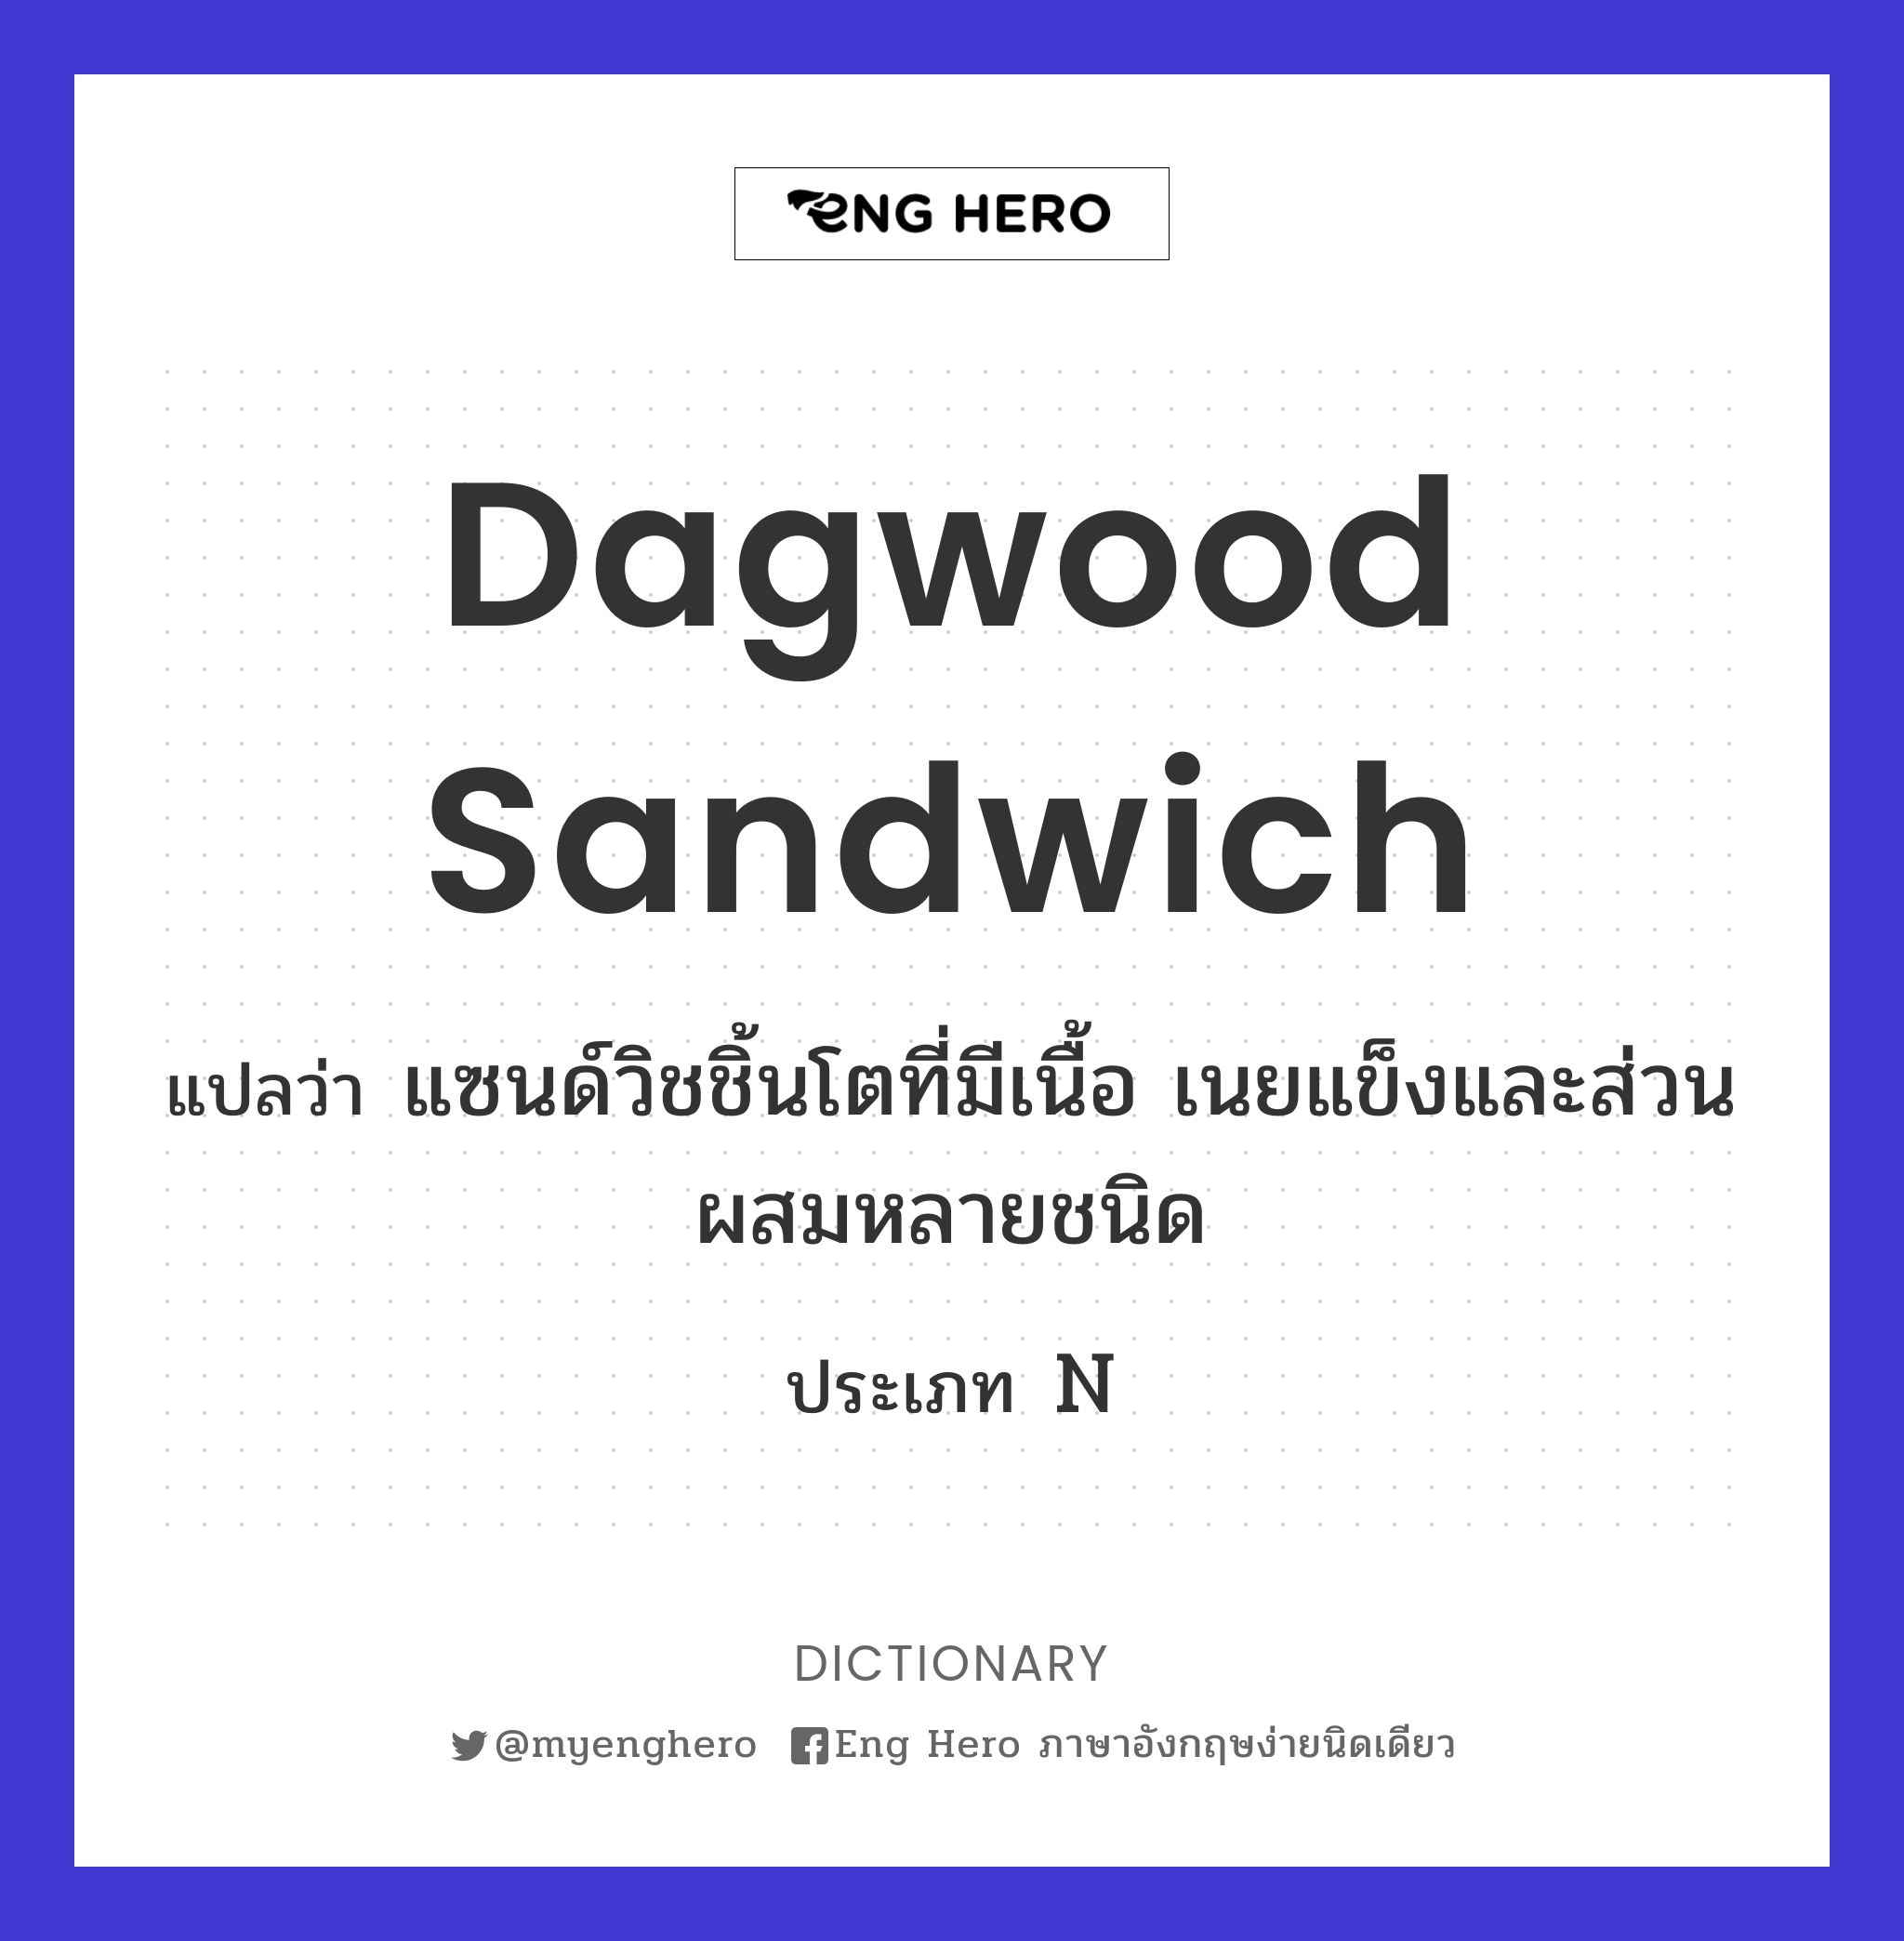 Dagwood sandwich